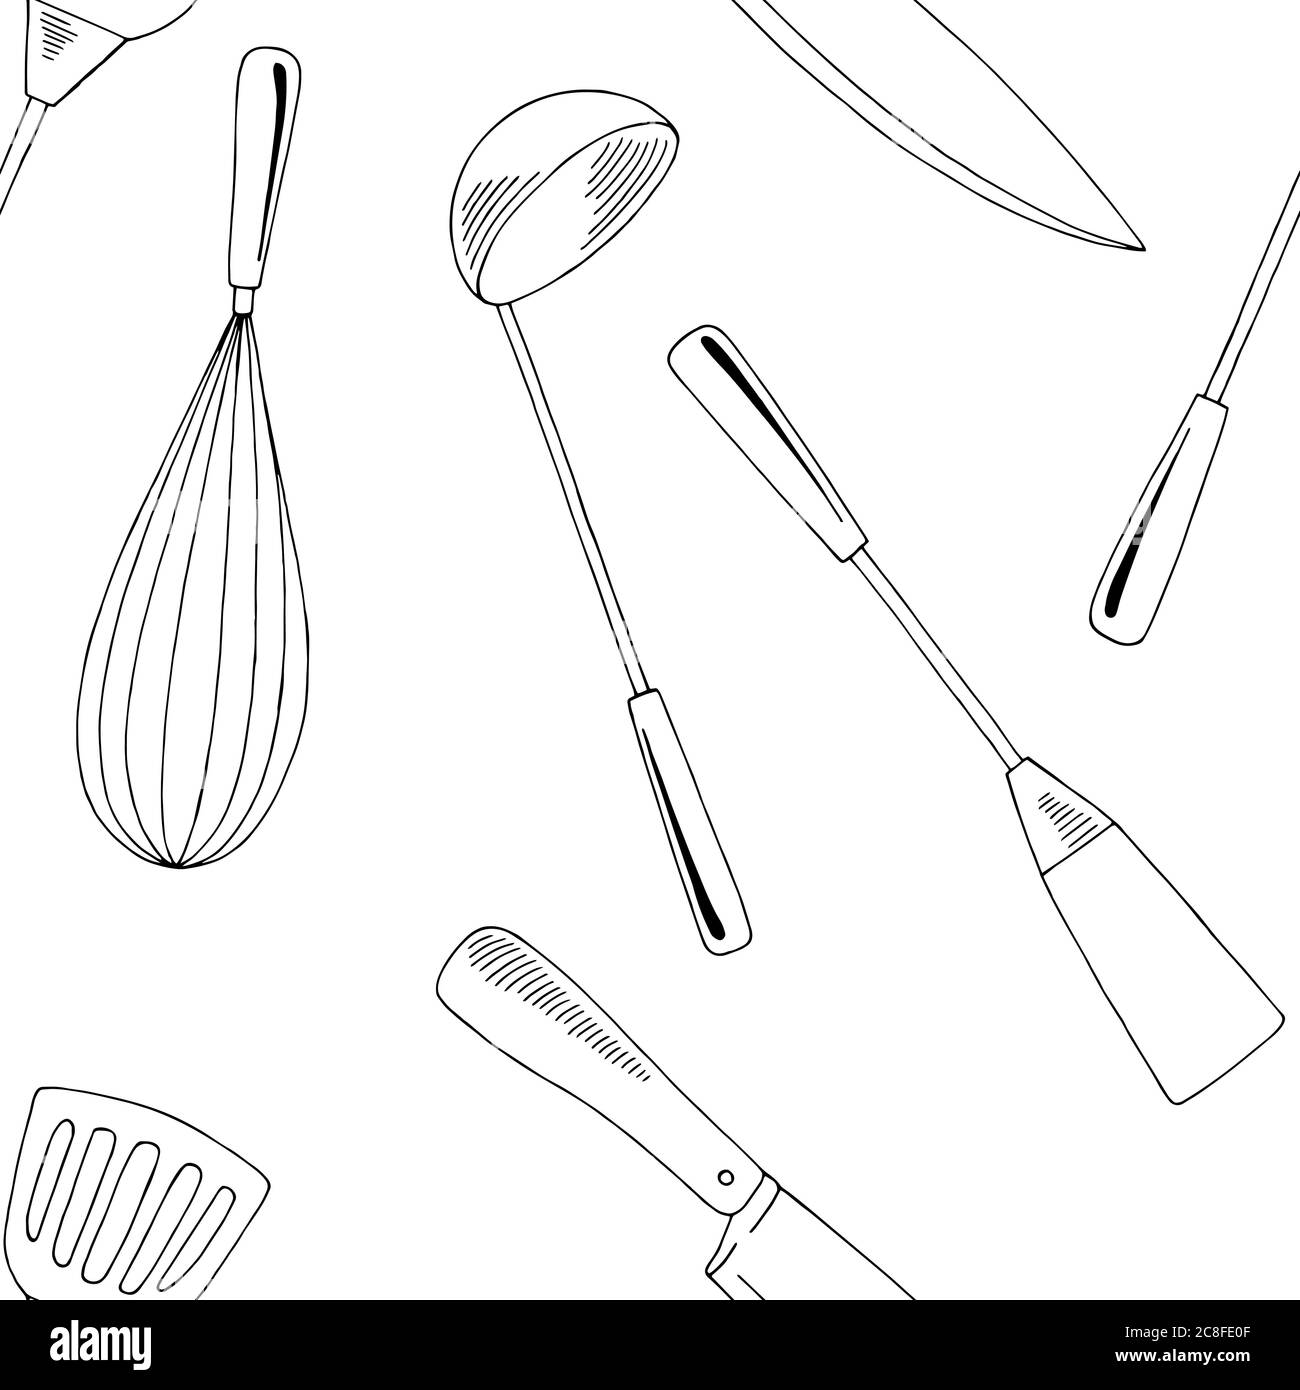 Küche liefert Grafik nahtlose Muster Hintergrund schwarz weiß Skizze Illustration Vektor Stock Vektor